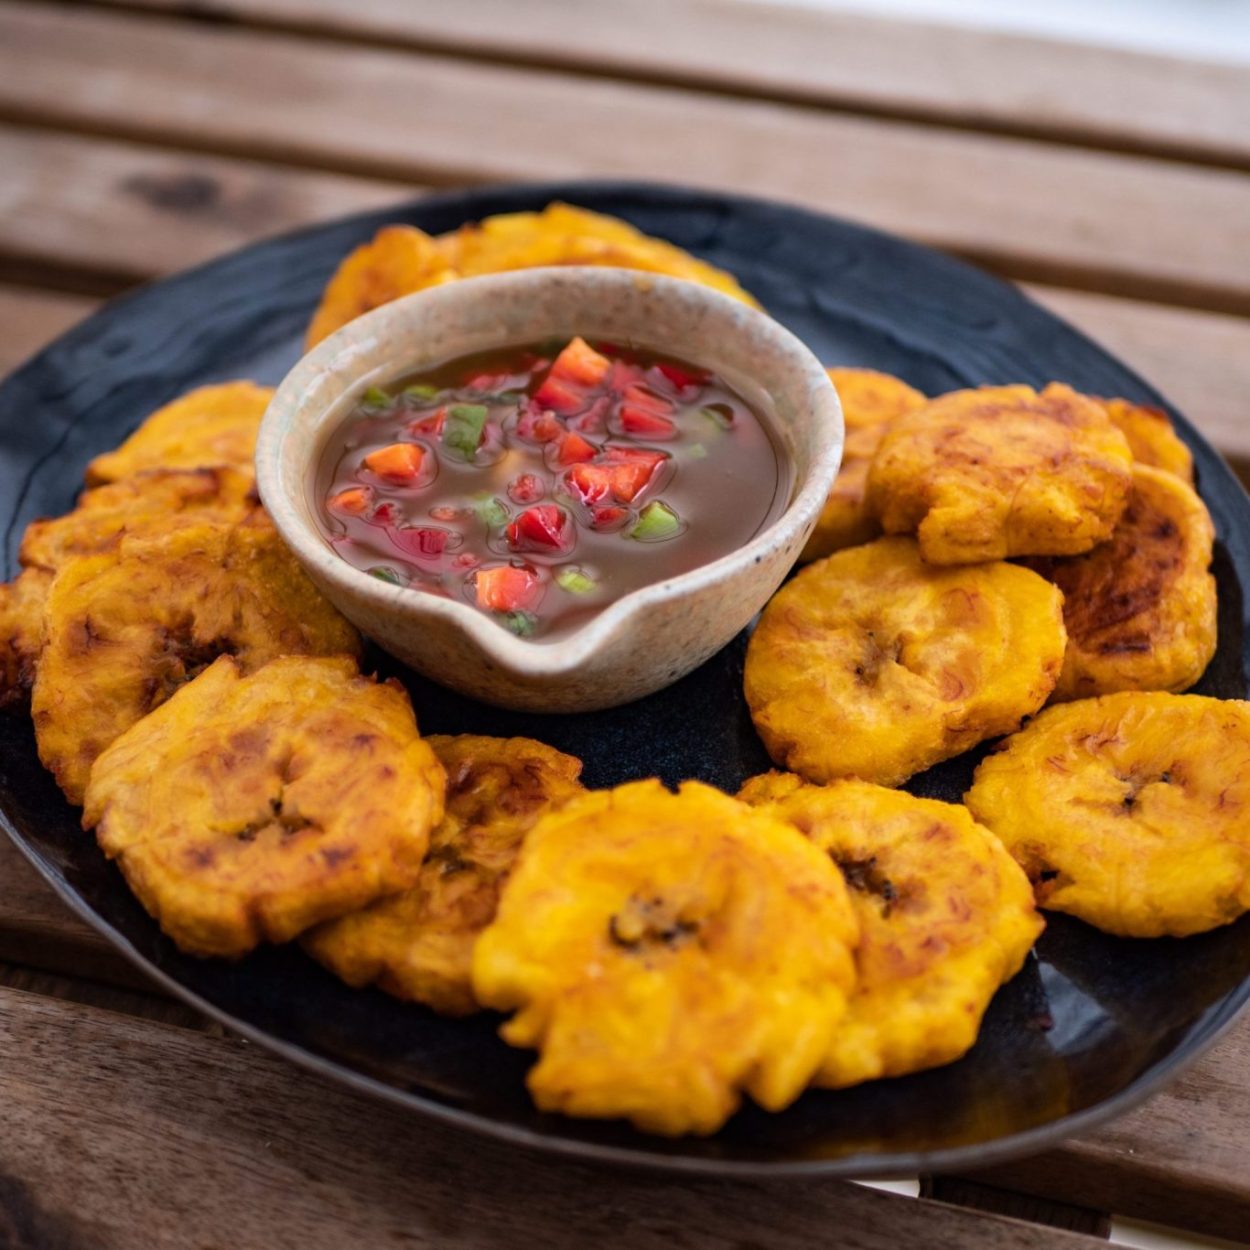 Tostones cubanos con mojo - Bananes plantains frites et sauce aux herbes - Recette cubaine